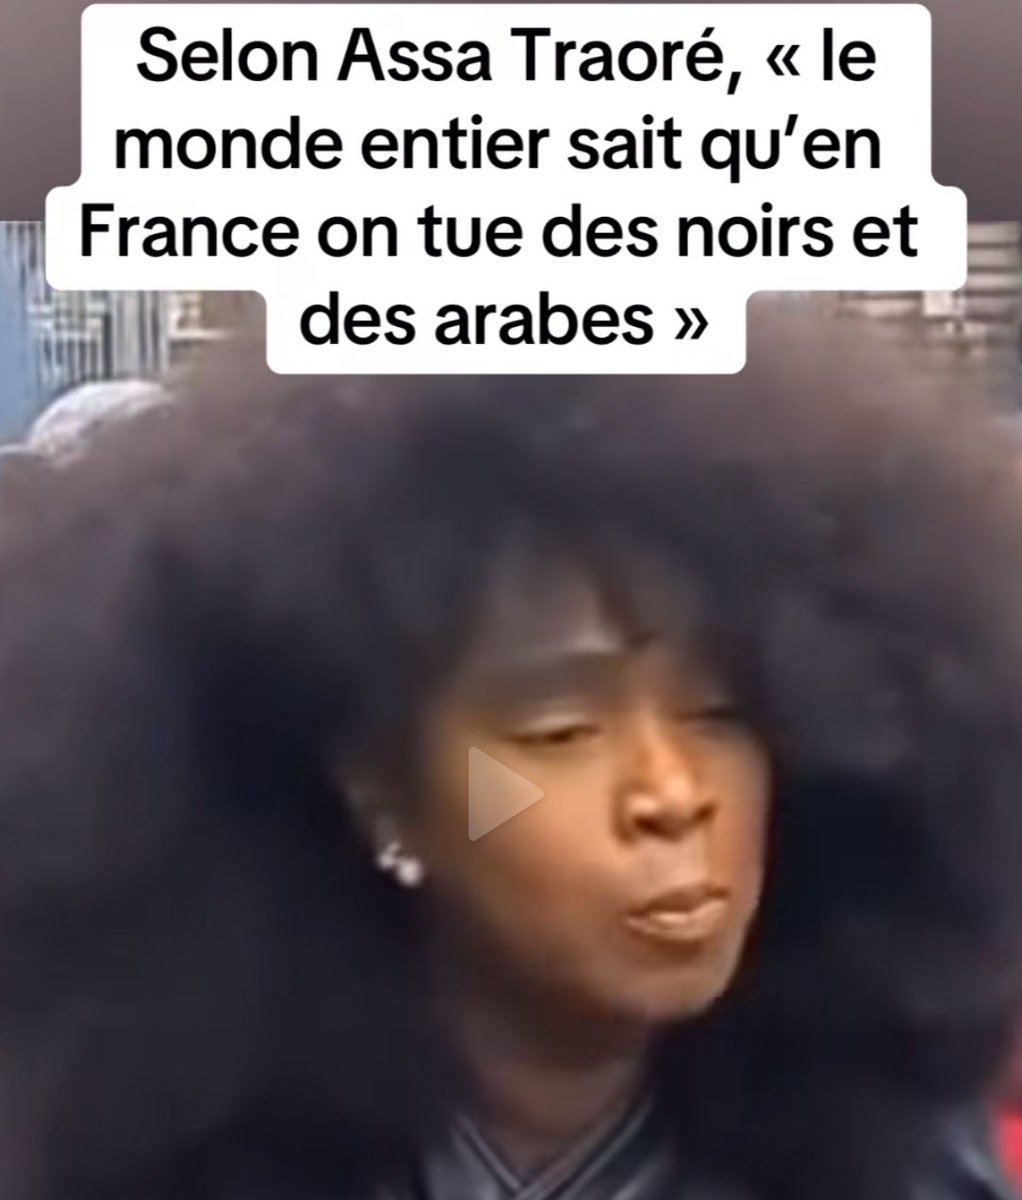 Puisque la France tue Assa De Traoré annonce qu’elle l’a quitte pour retourner au Mali un pays tellement paisible. Je lui souhaite un séjour africain chaleureux